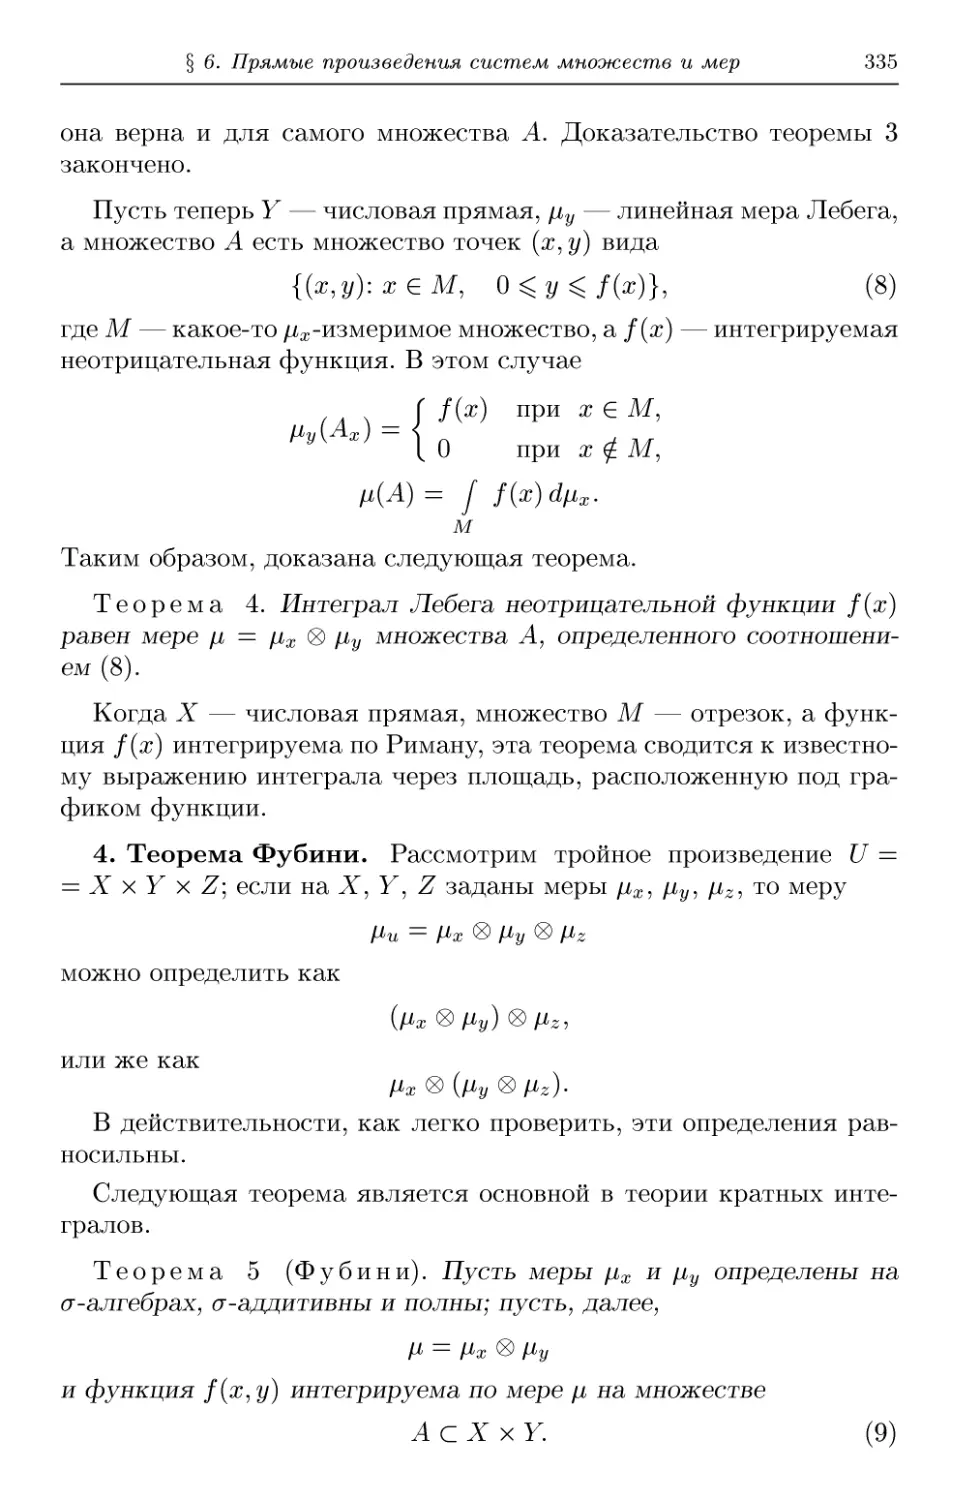 4. Теорема Фубини